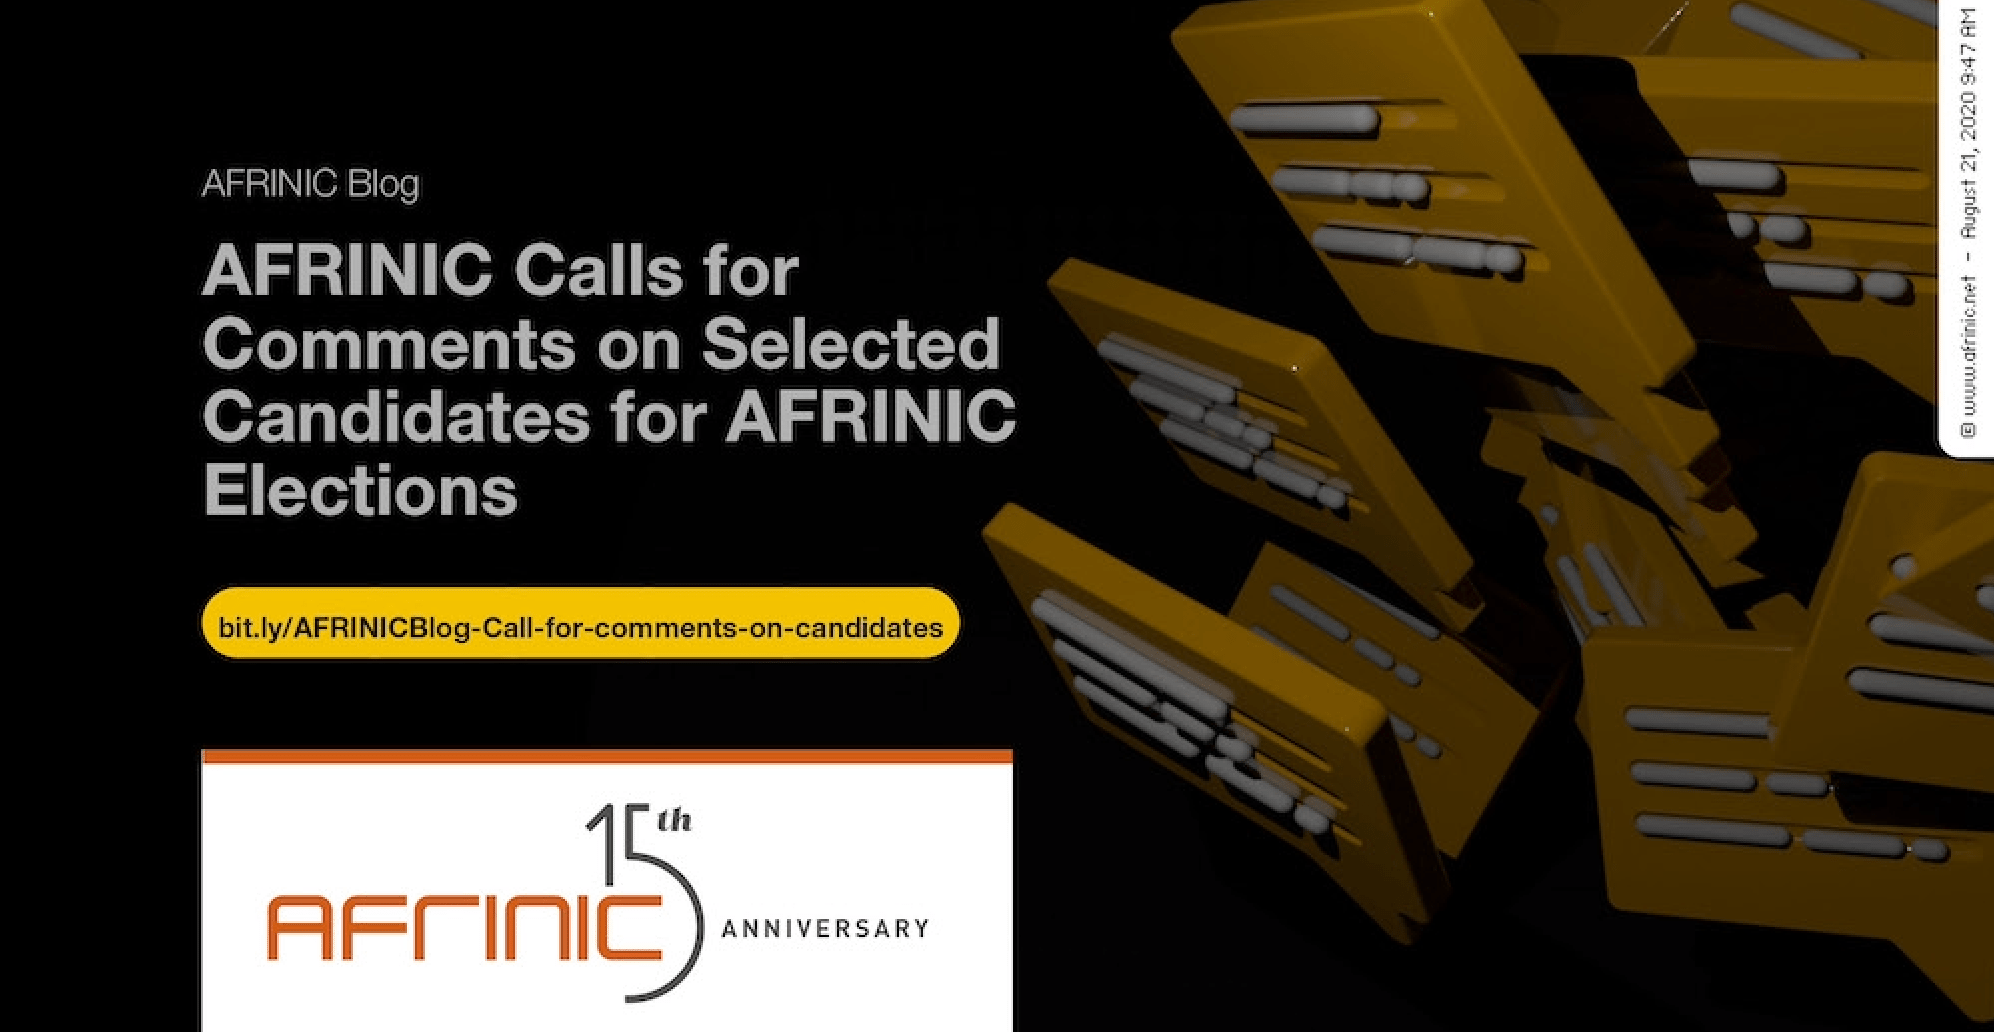 Solicitações da AFRINIC para comentários sobre candidatos selecionados para as eleições da AFRINIC